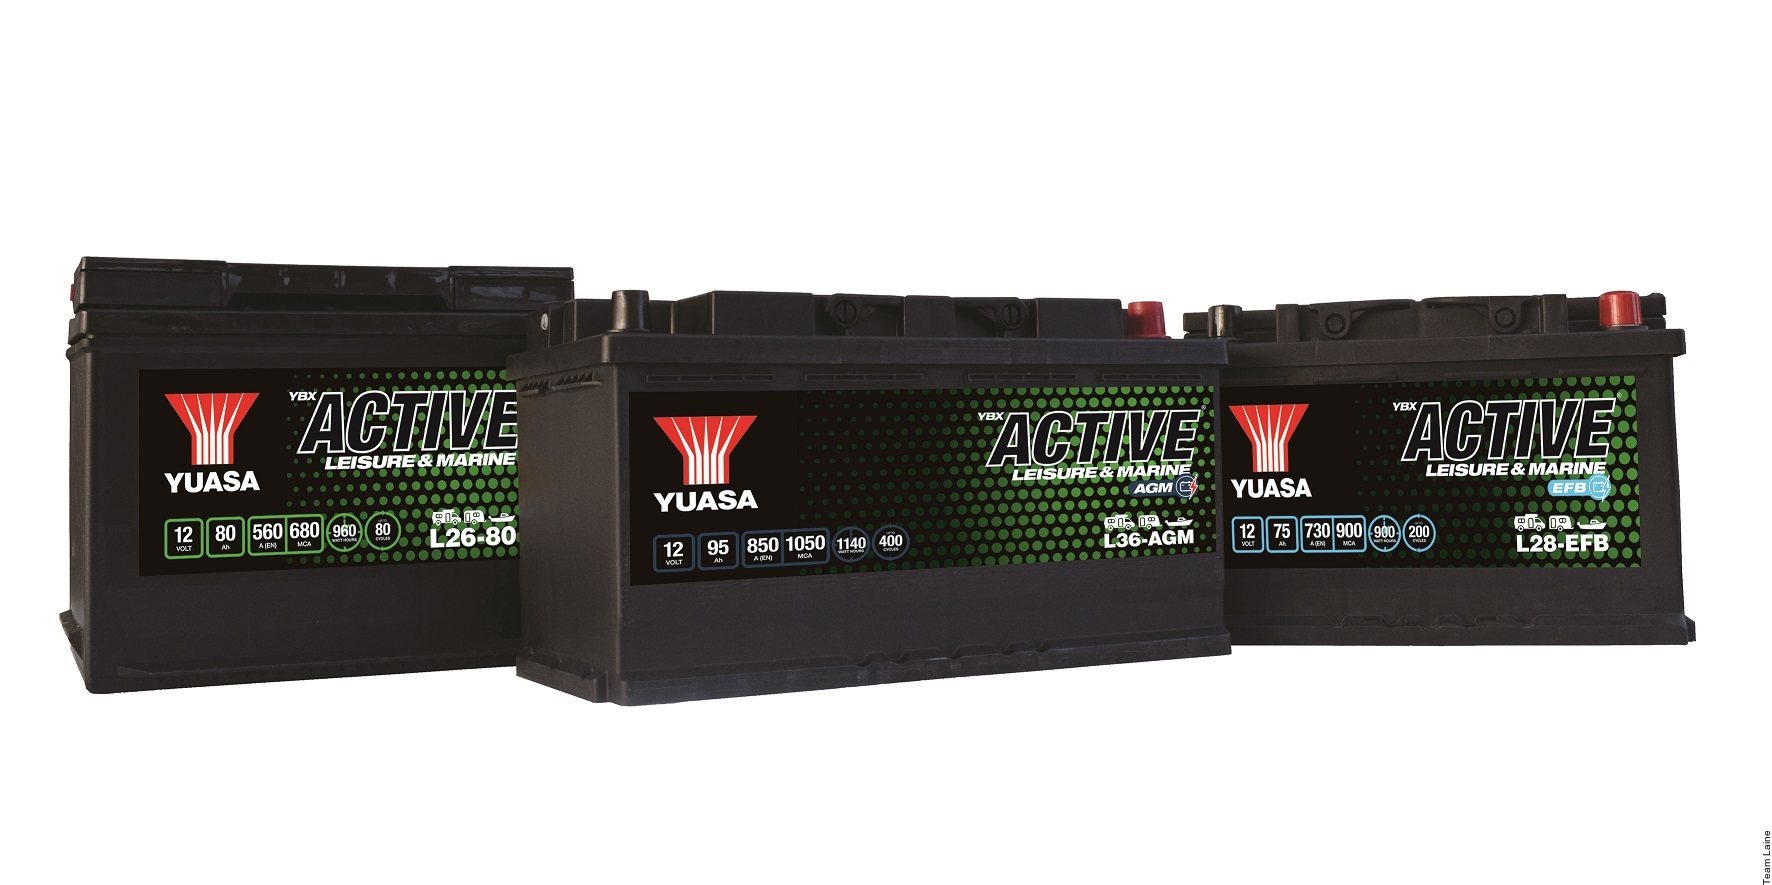 YUASA Batterie 12V - 80Ah - L26-80 